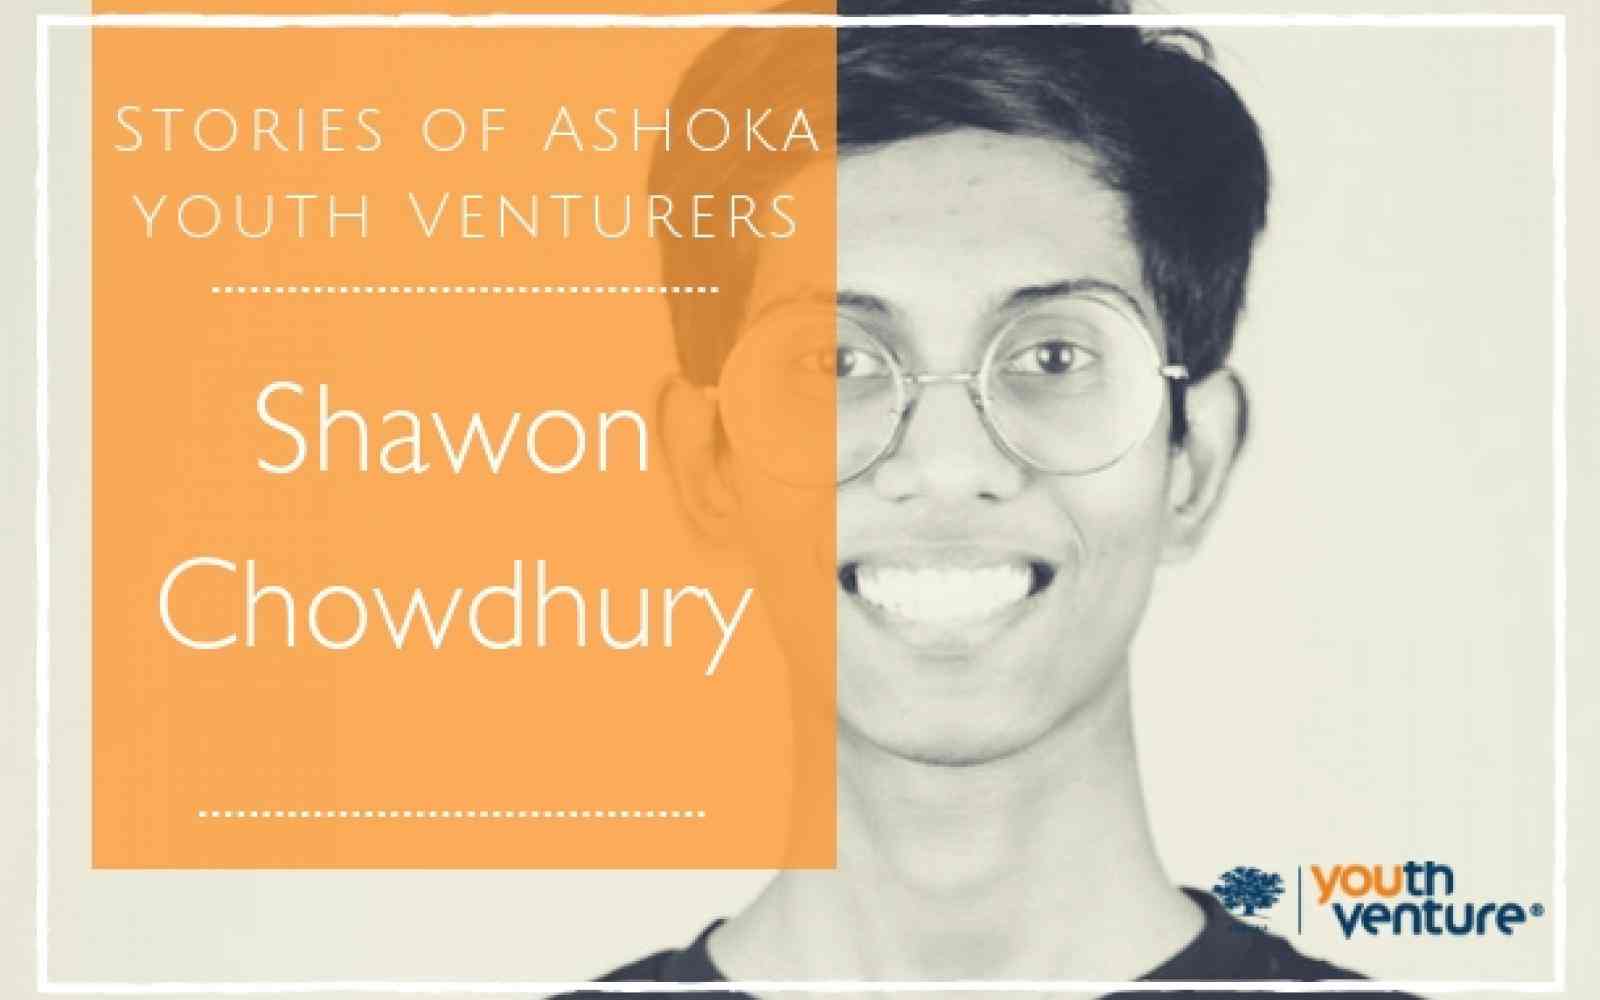 Shawon Choudhury